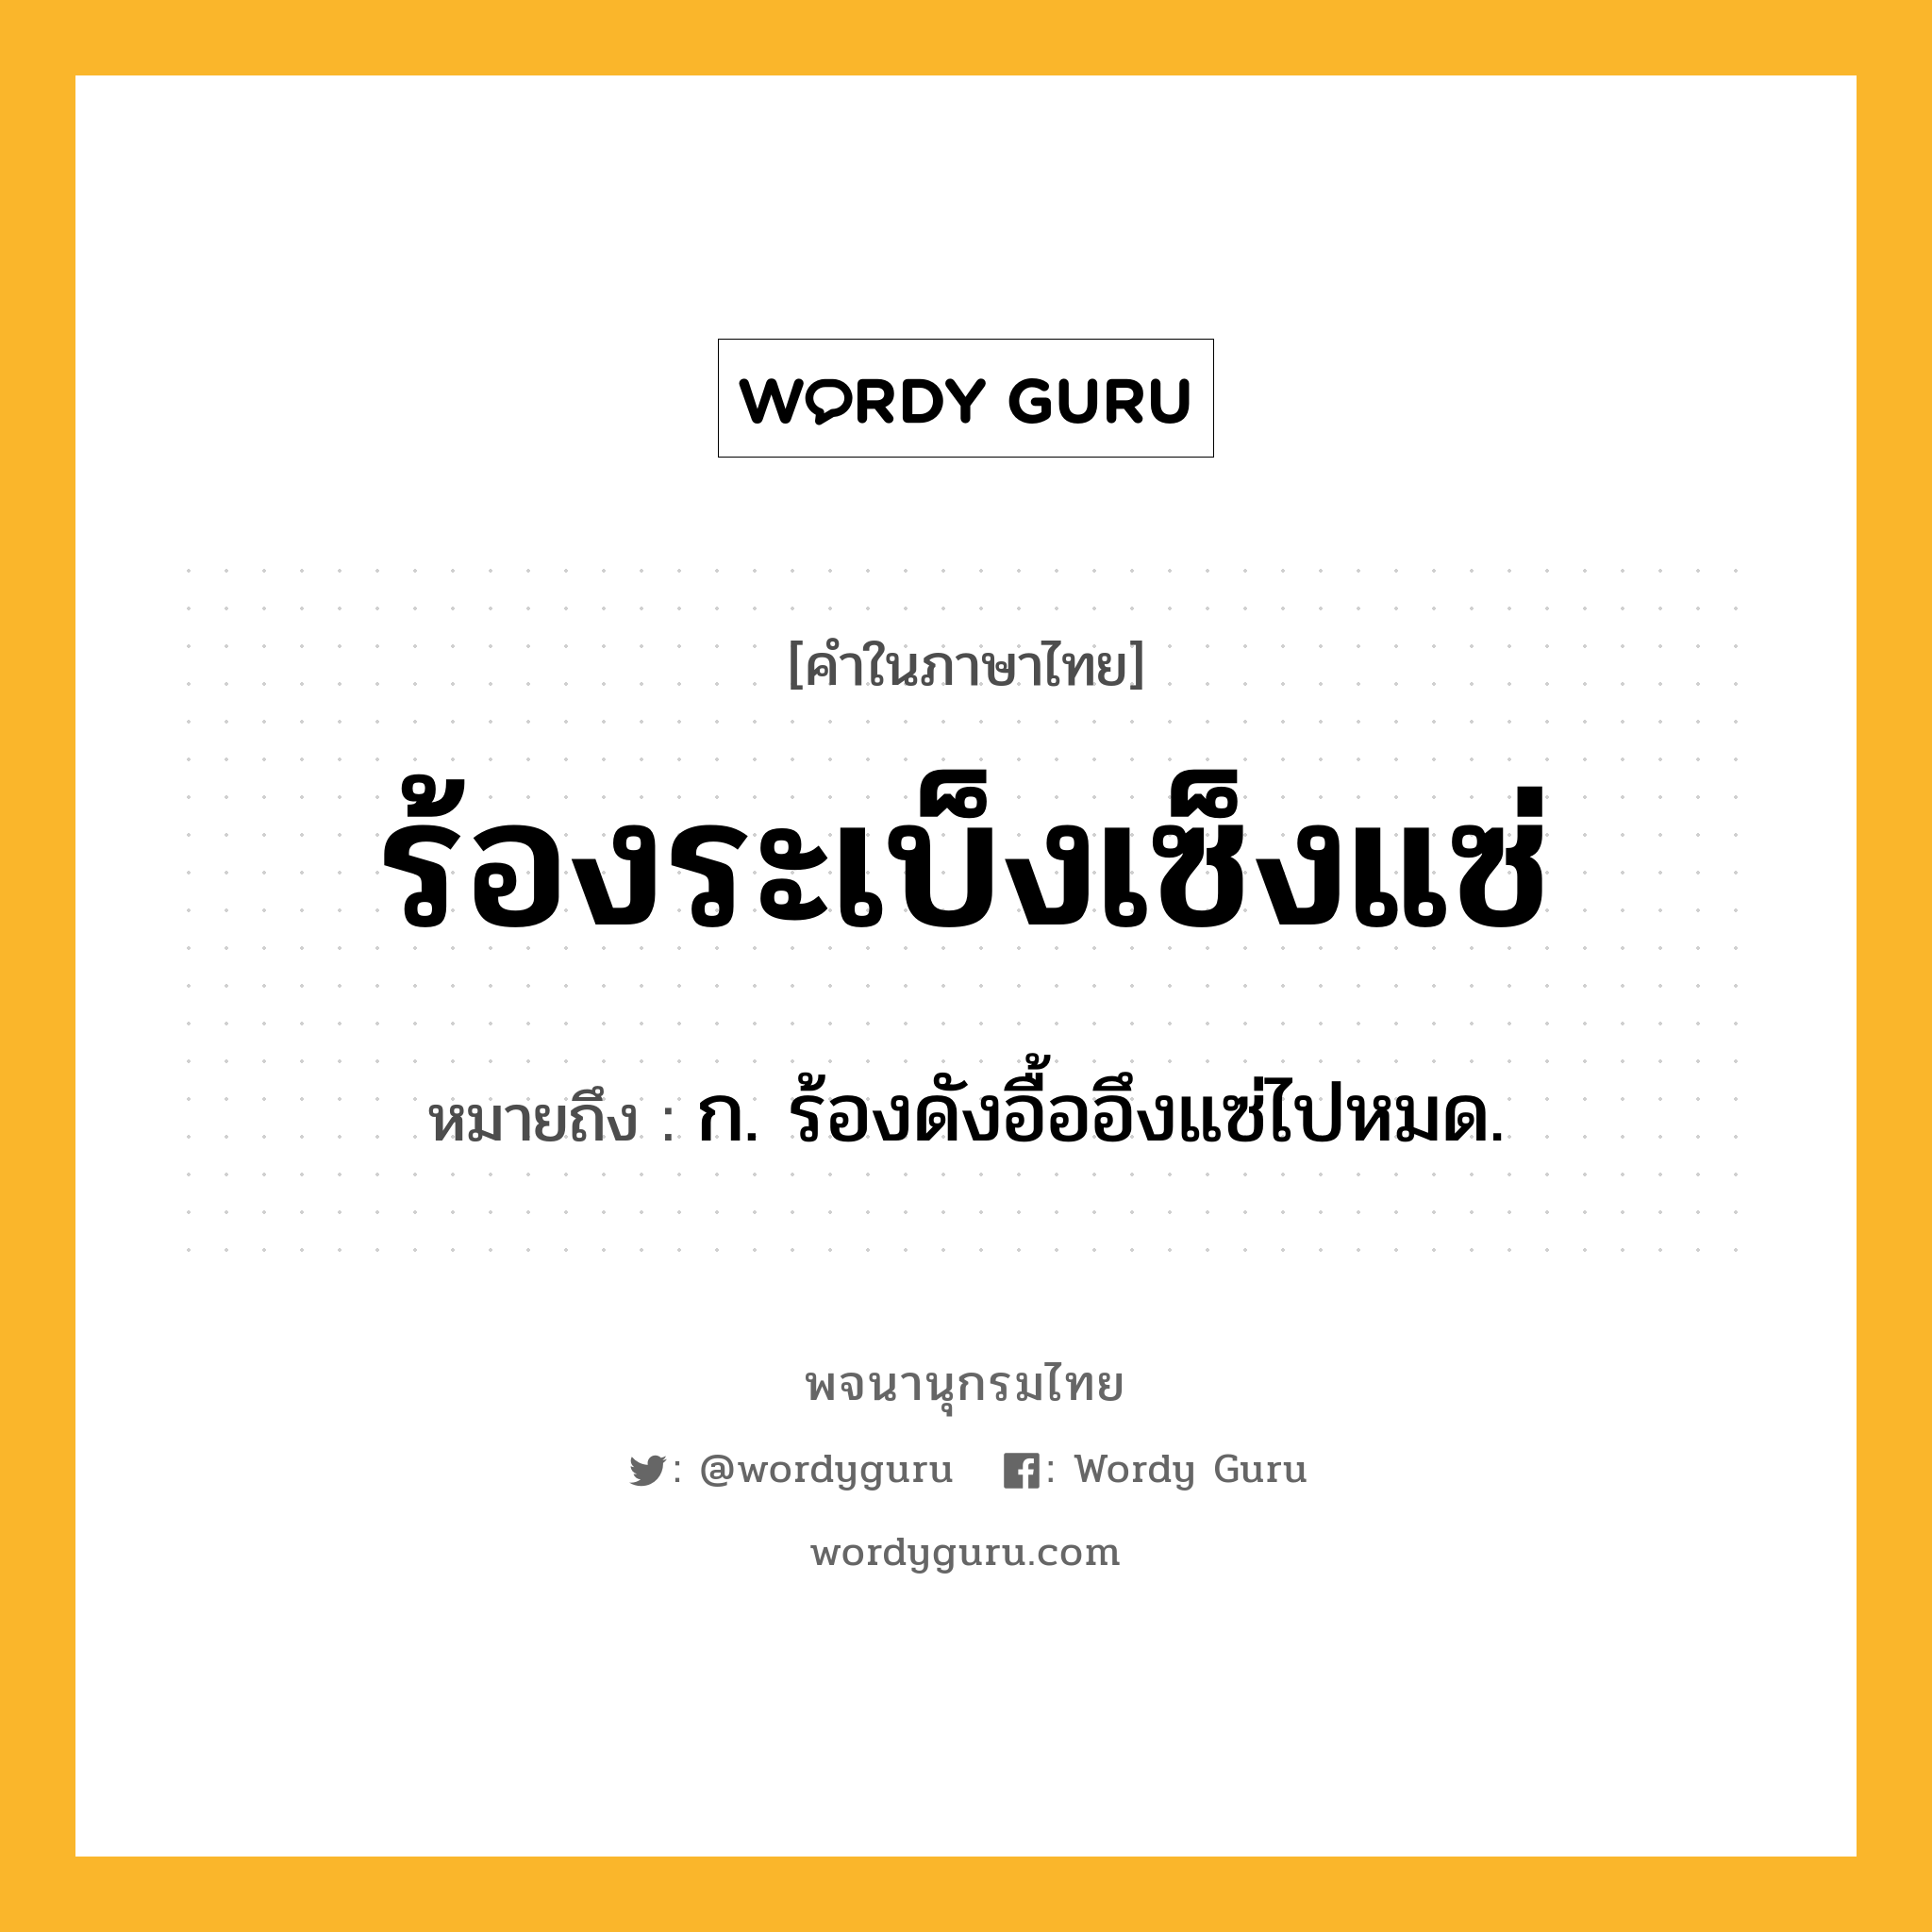 ร้องระเบ็งเซ็งแซ่ หมายถึงอะไร?, คำในภาษาไทย ร้องระเบ็งเซ็งแซ่ หมายถึง ก. ร้องดังอื้ออึงแซ่ไปหมด.